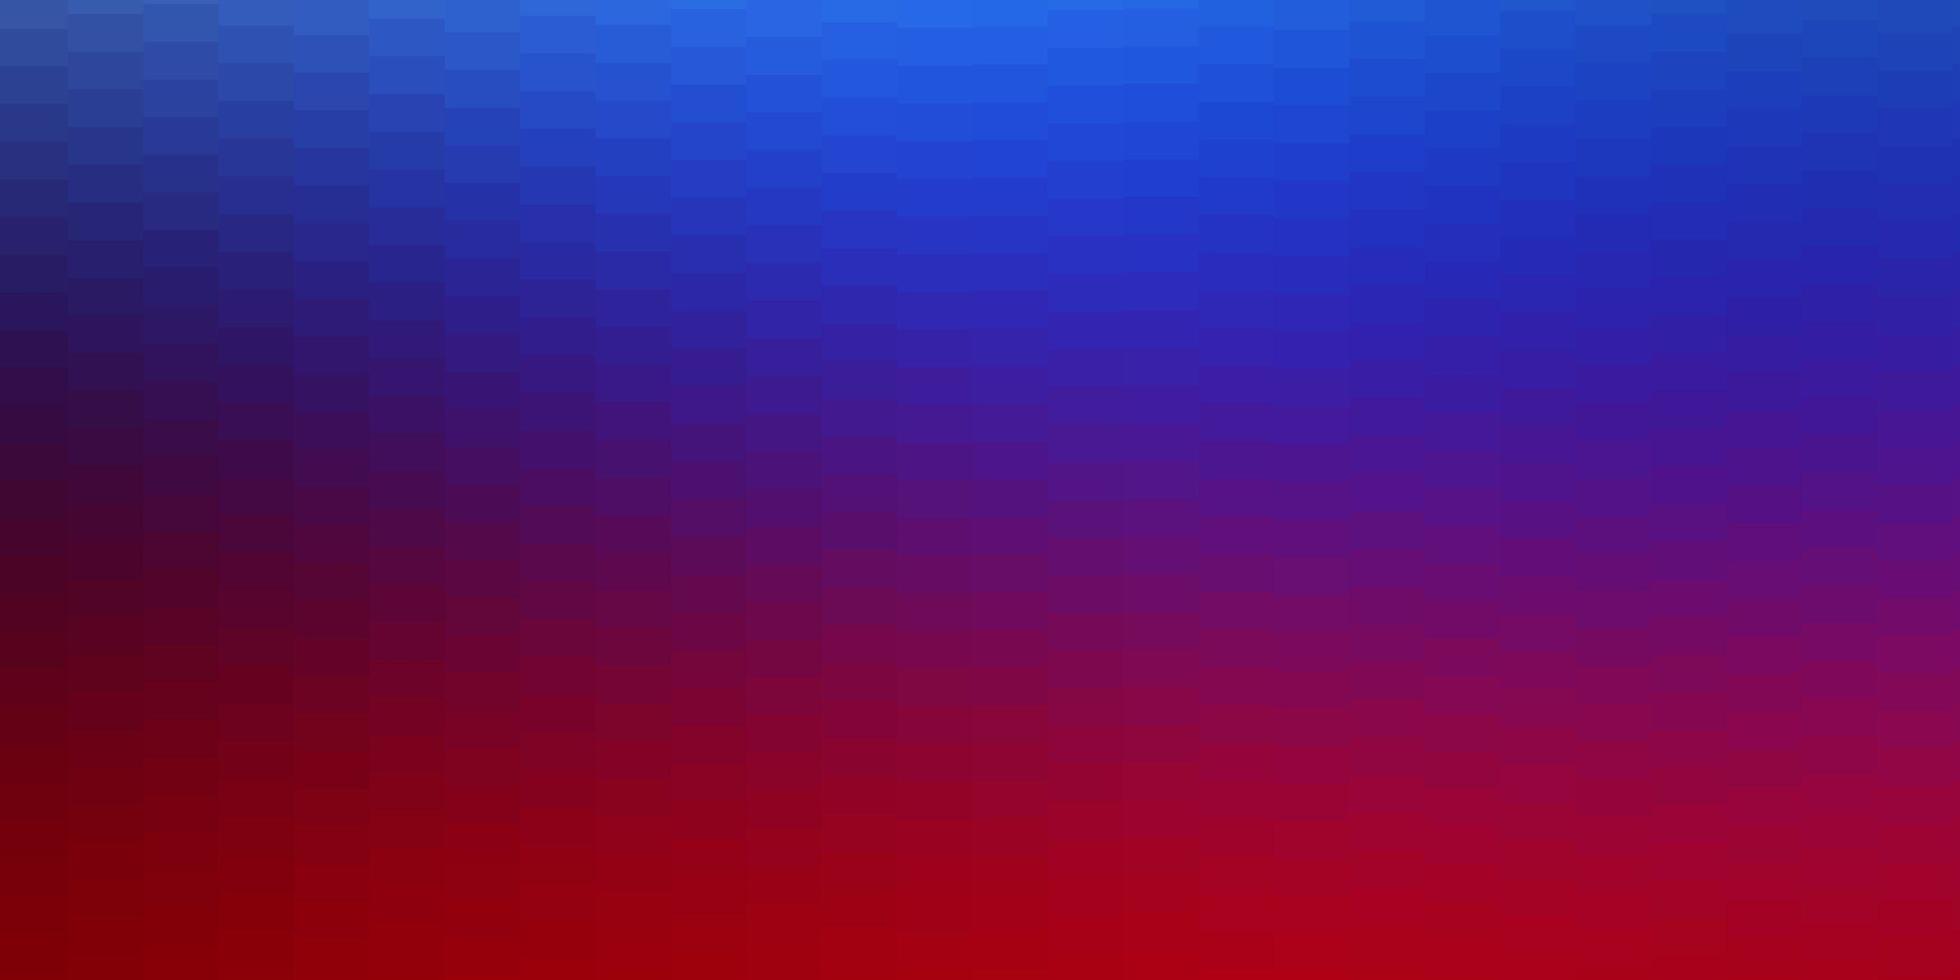 fundo vector vermelho azul claro em estilo poligonal nova ilustração abstrata com design de formas retangulares para a promoção de seus negócios